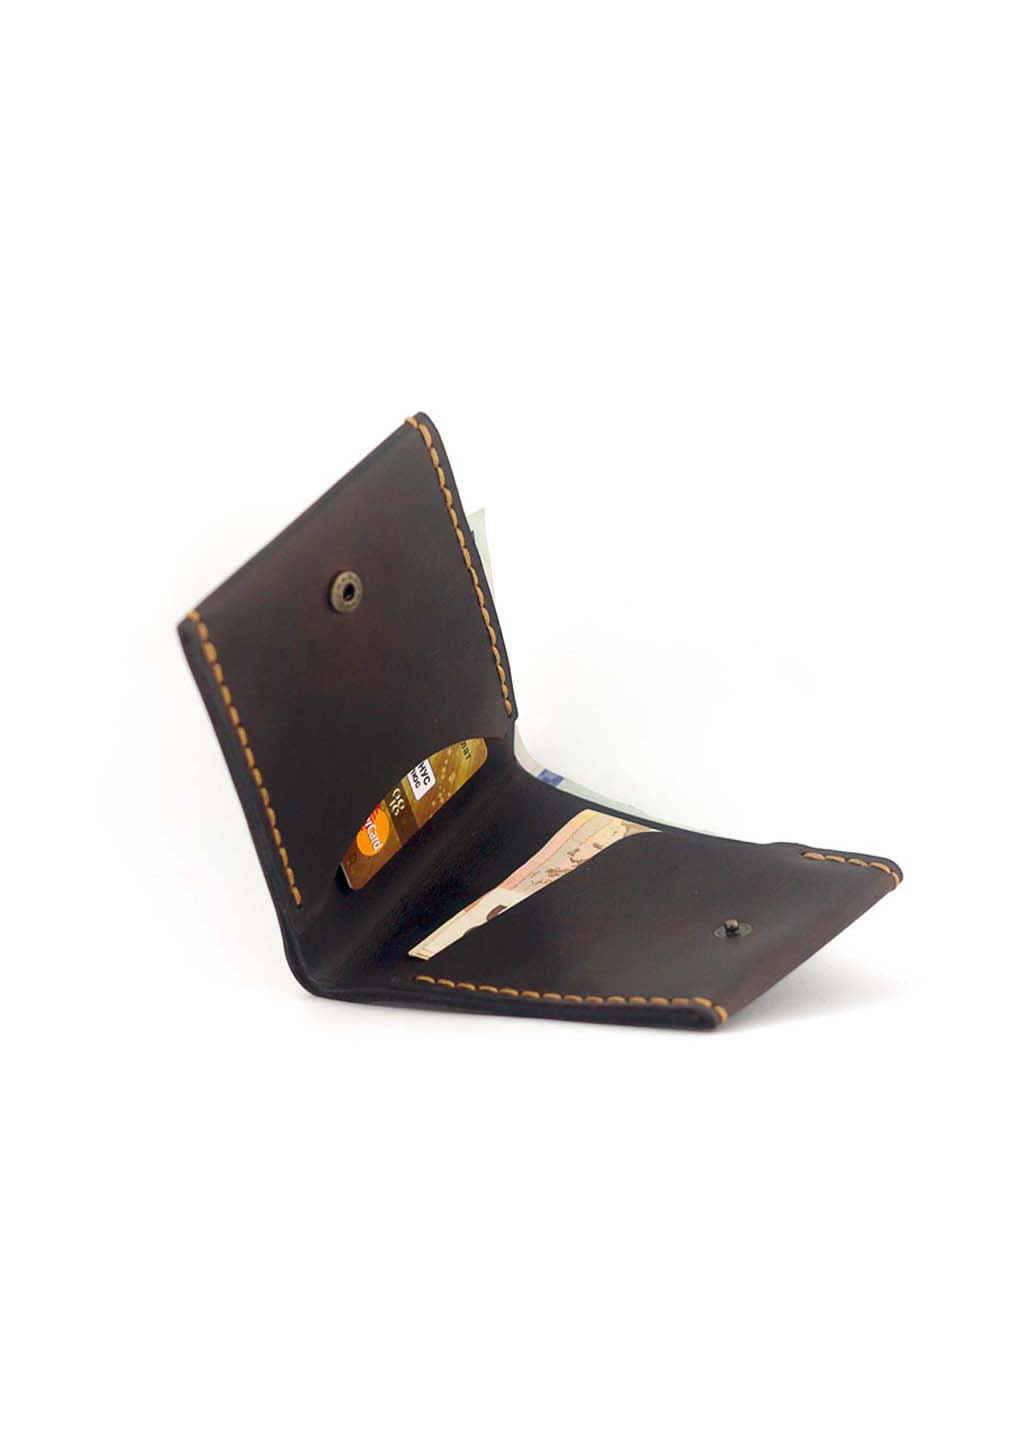 Мужской кошелек кожаный на кнопке Wallet Slim Anchor Stuff (275992271)